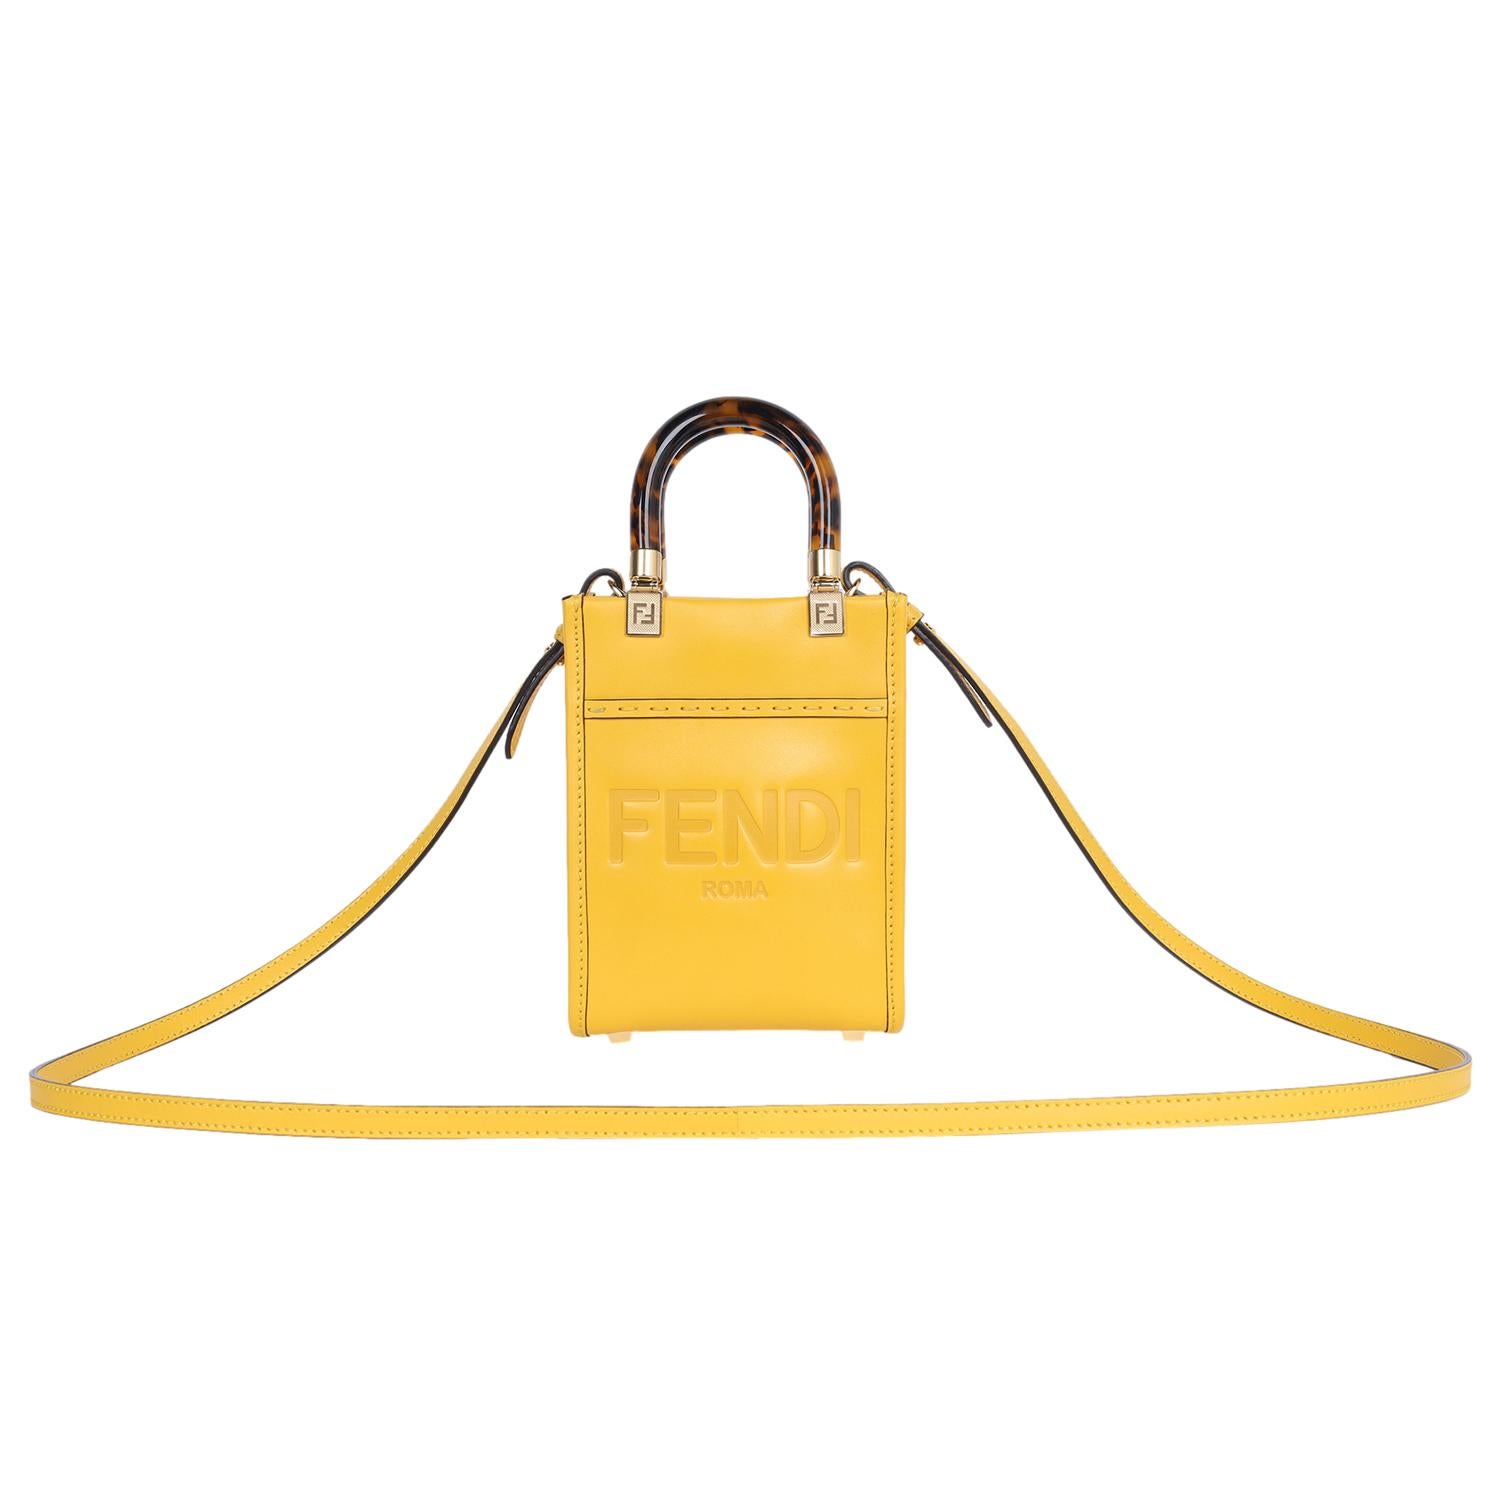 Authentische, gebrauchte Fendi Mini Sunshine Shopper Tasche aus gelbem Leder mit Heißprägung 